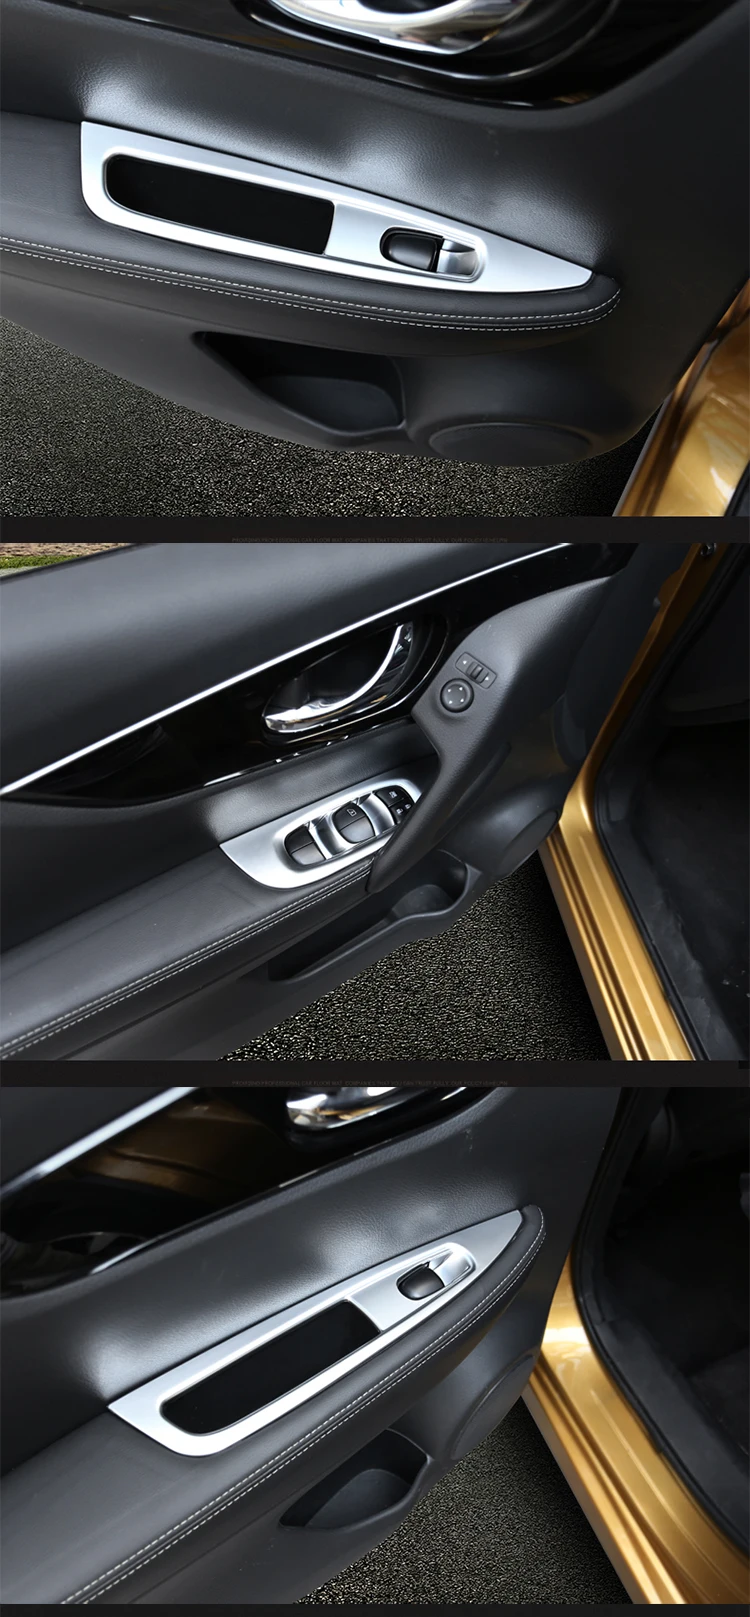 Для Nissan Rogue Sport Qashqai J11 хромированная дверь, окно, подлокотник, кнопка переключения, панель, отделка рамы